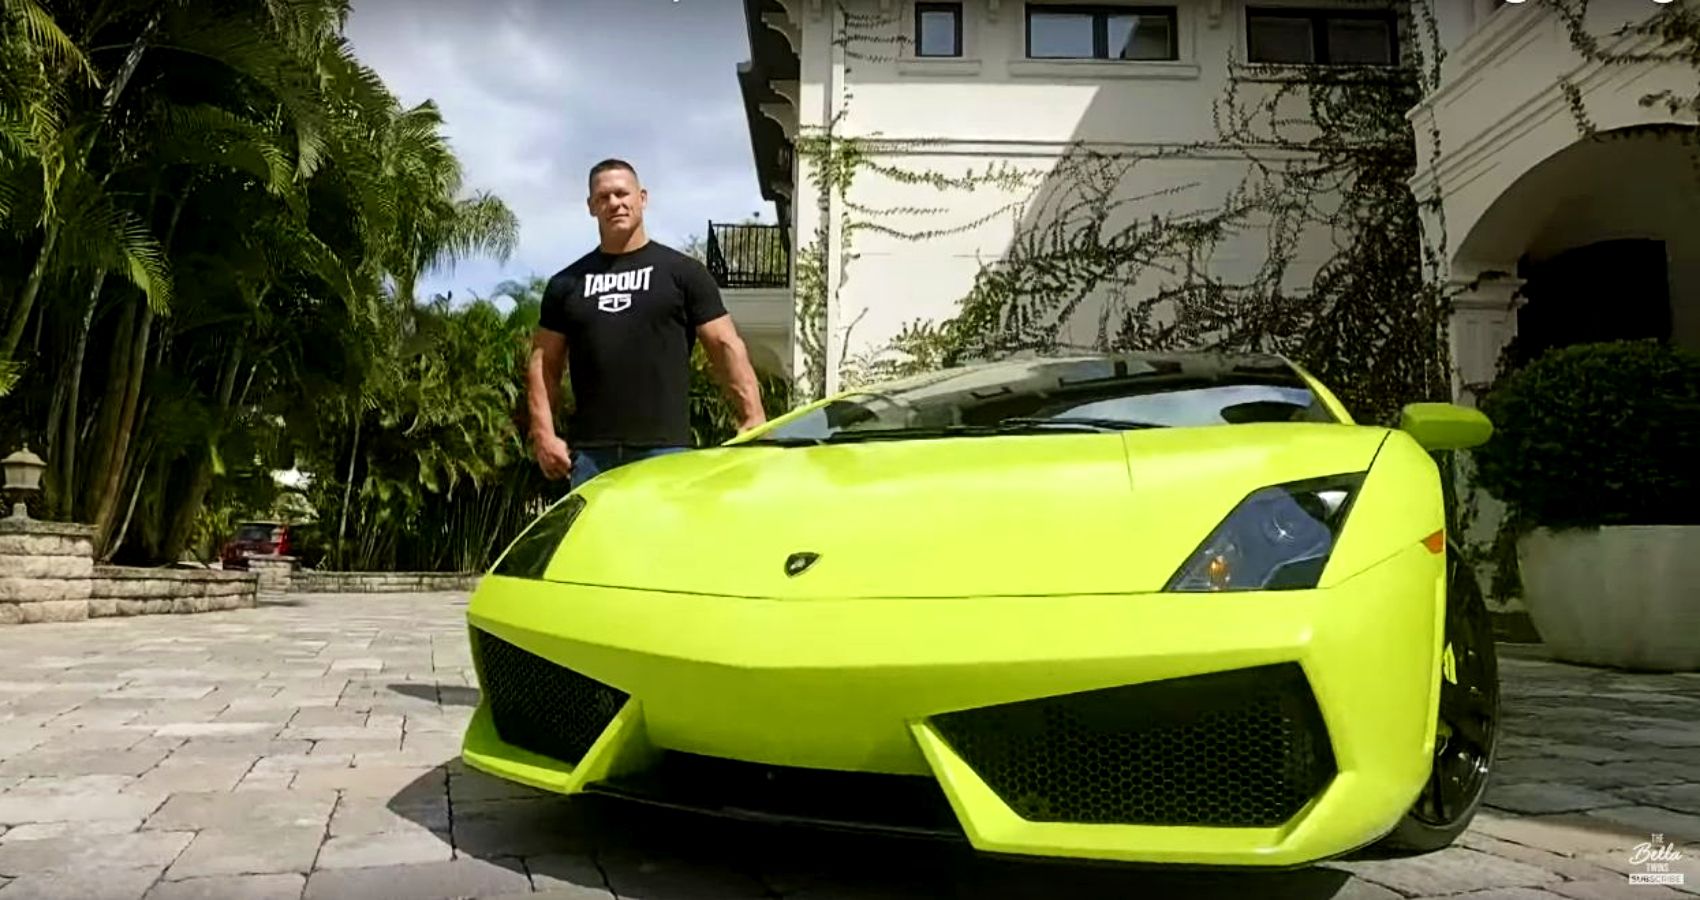 John Cena's 2009 Lamborghini Gallardo